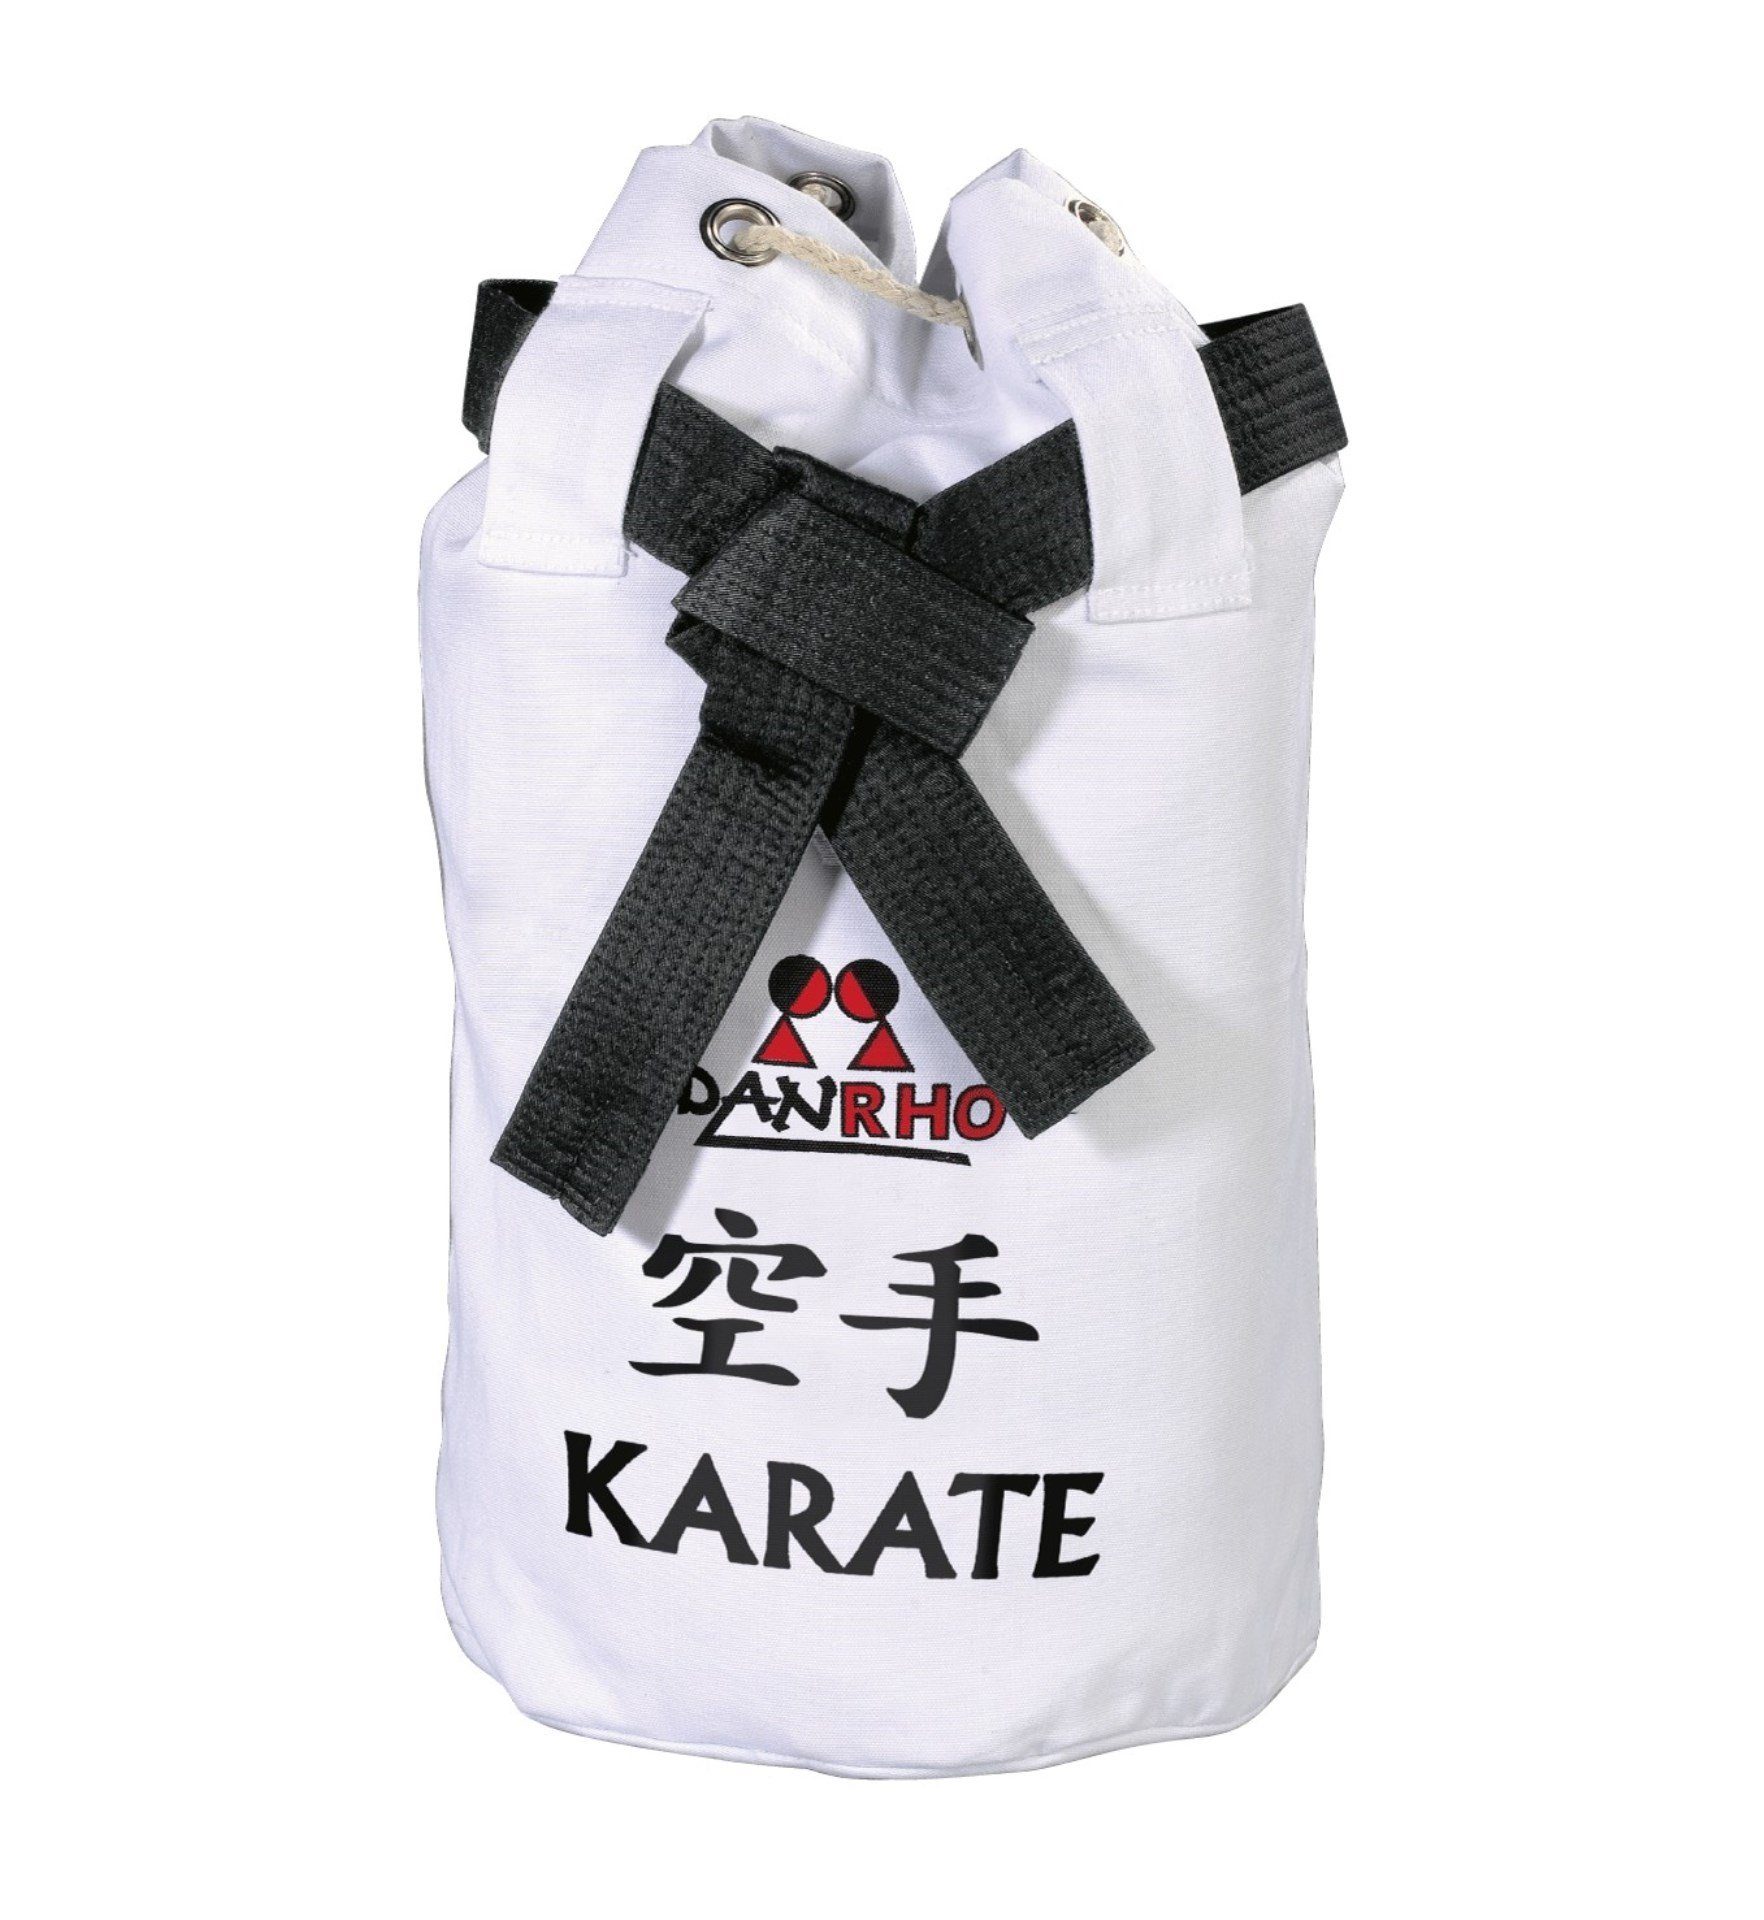 Danrho Sporttasche Karate (Kordelzug, Baumwolle), Optik Beutel Schnellverschluß, Turnbeutel schwarz weiss, Rucksack Seesack Budogürtel oder Kinder